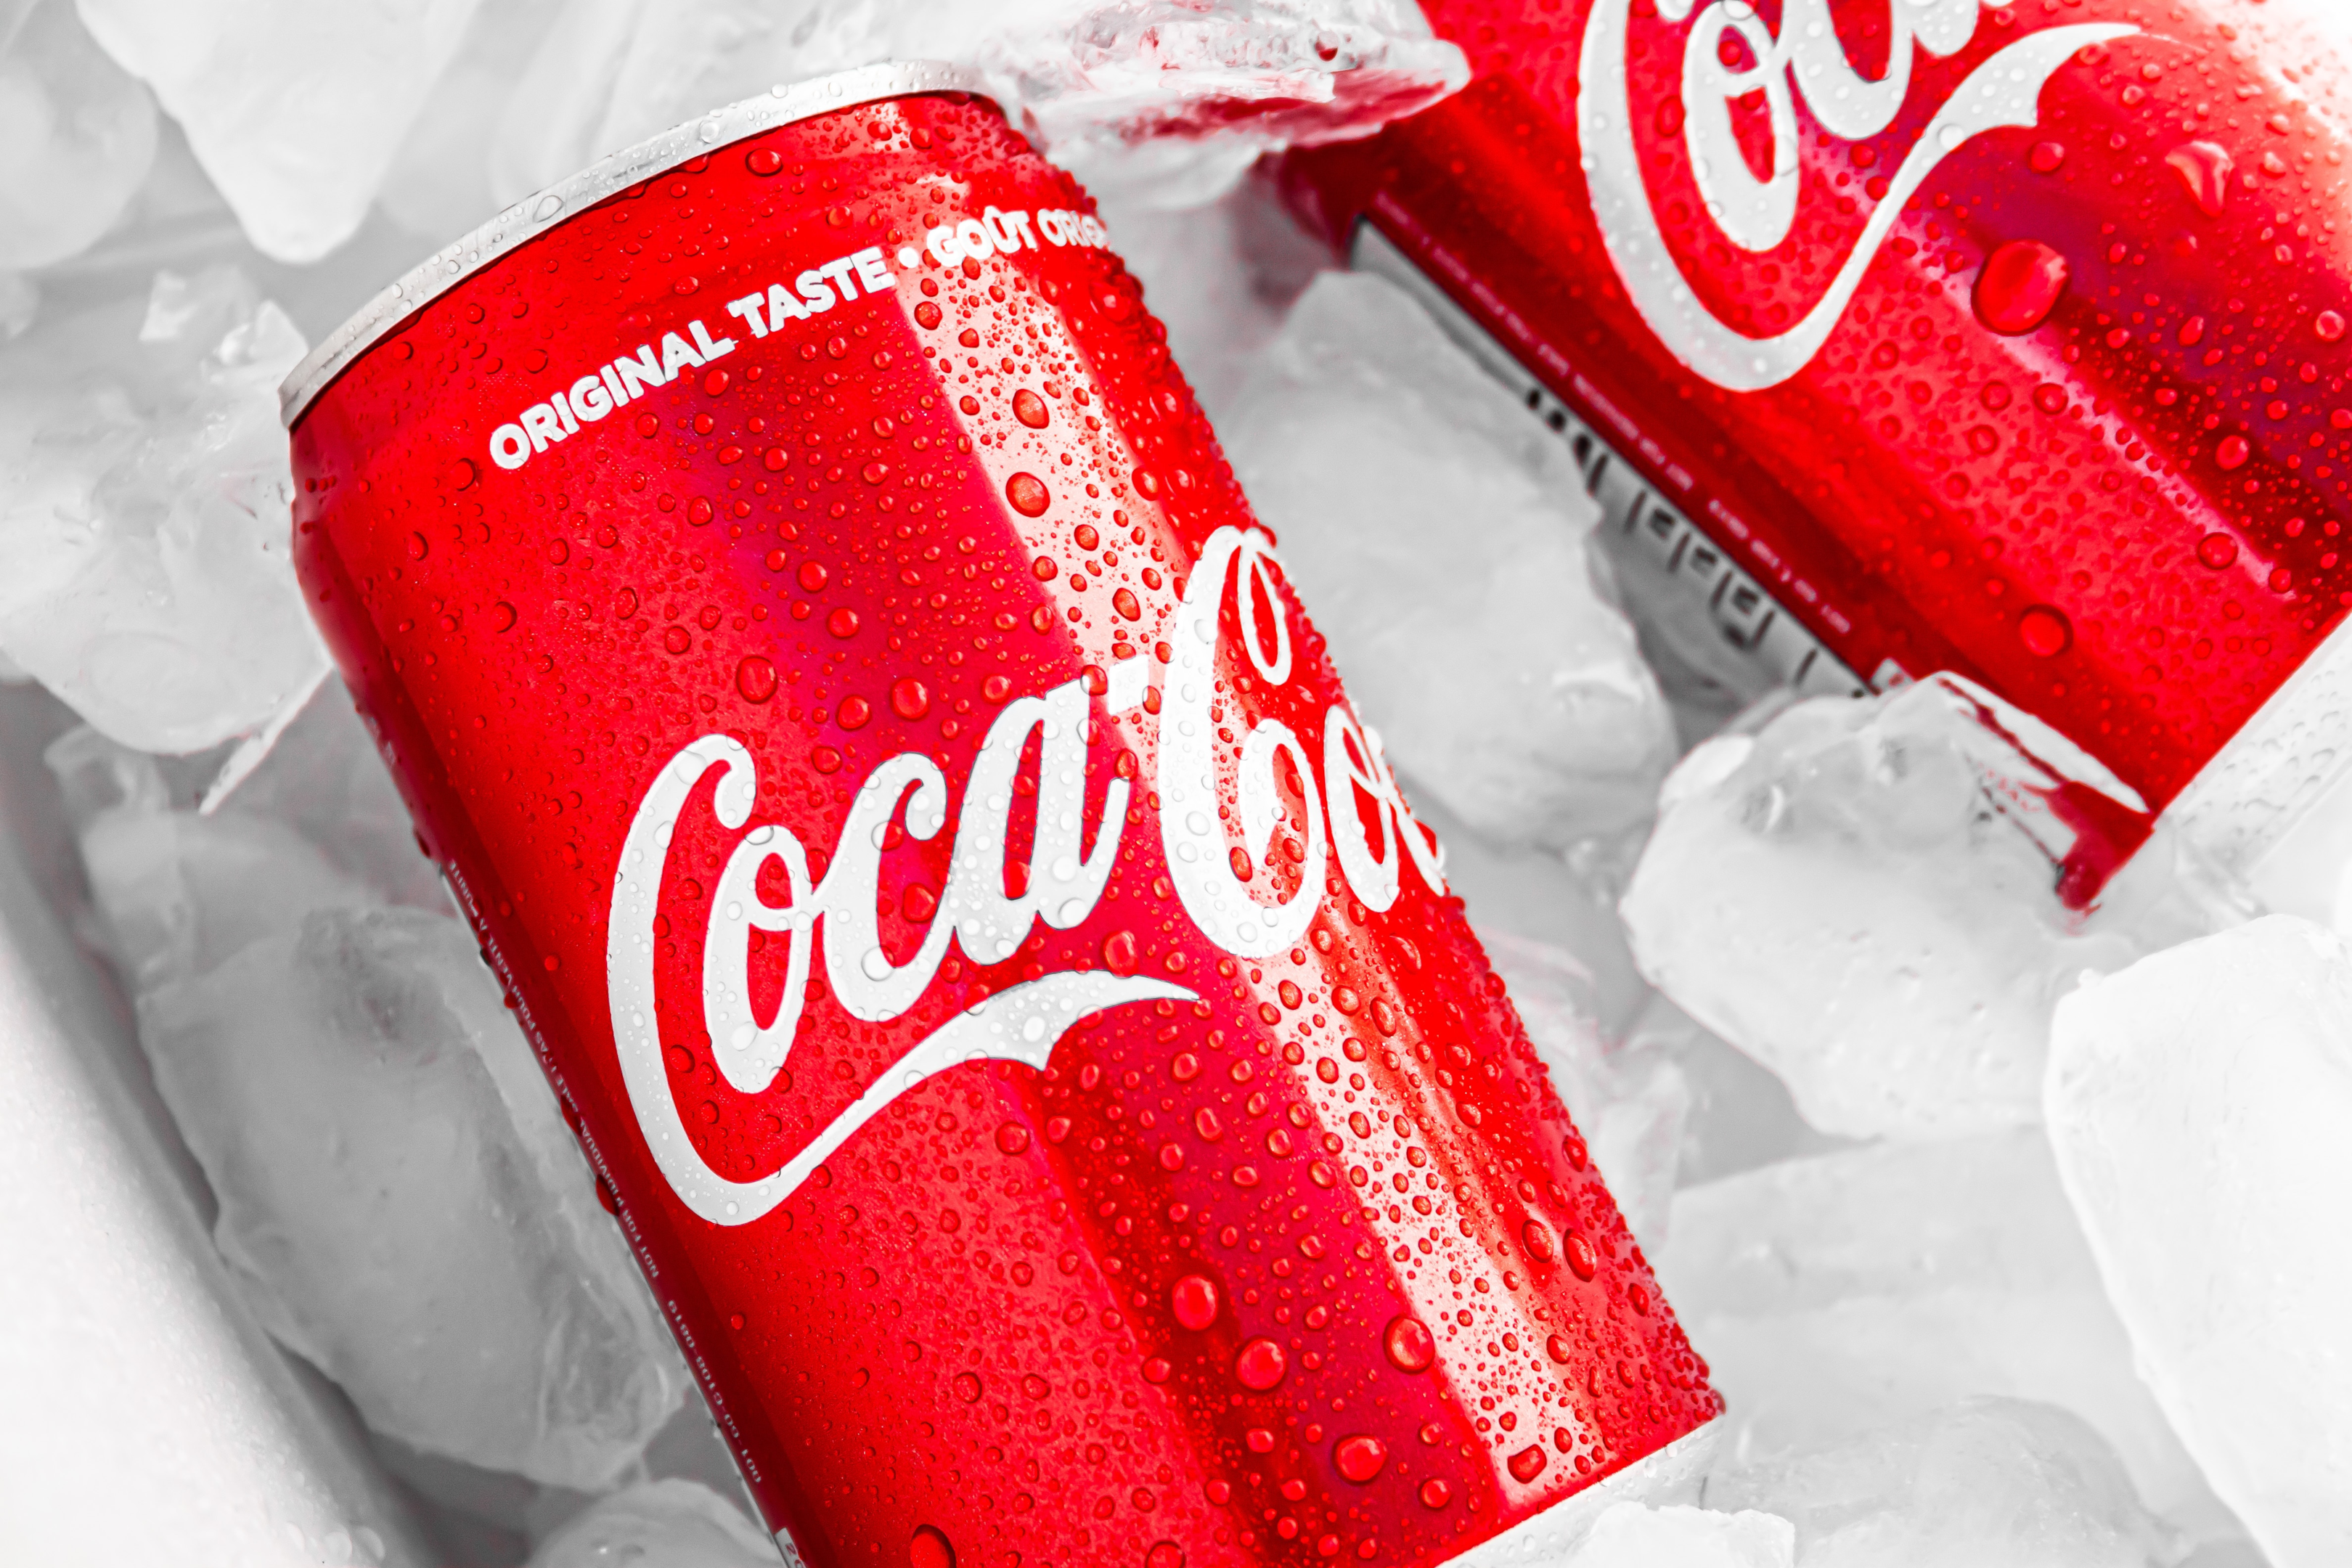 Coca Cola "Share a Coke," Corporate ad